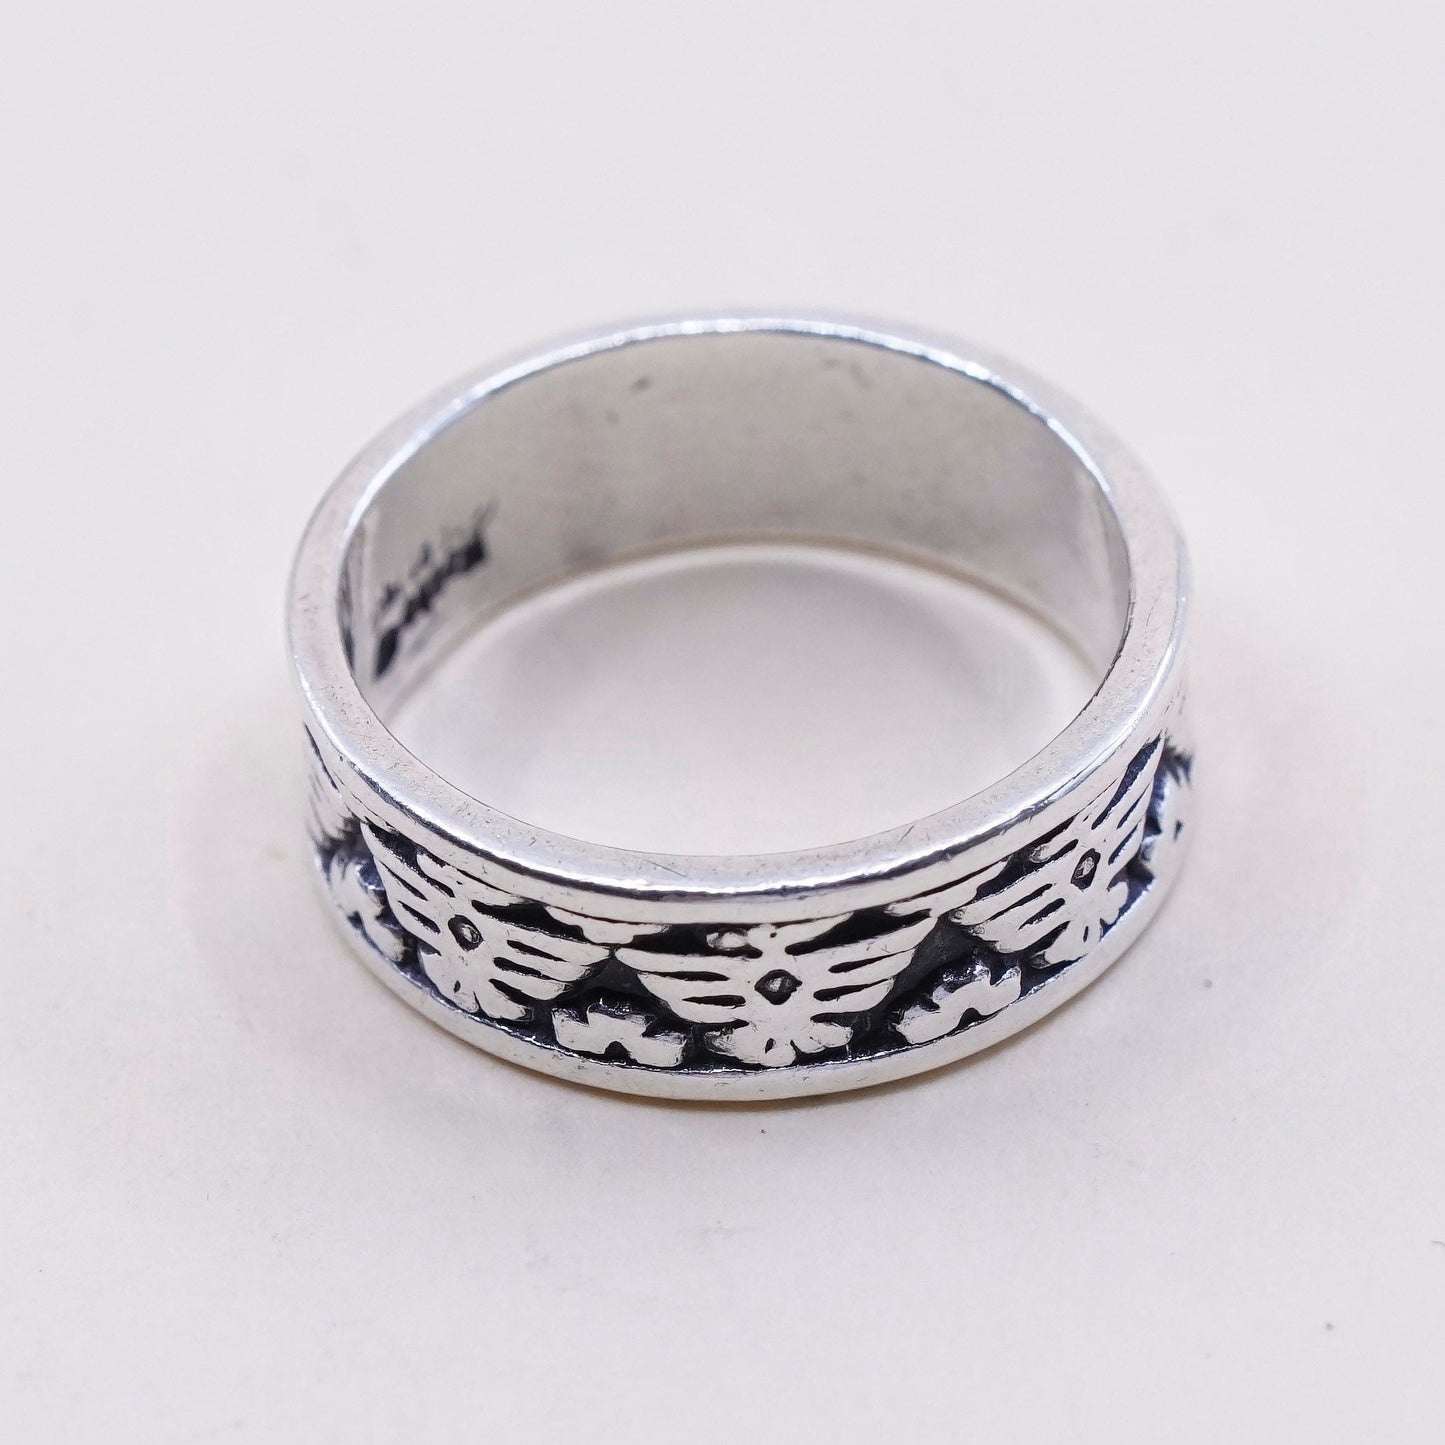 Size 6, vtg masha hopi Sterling silver handmade ring, 925 eagle embossed band